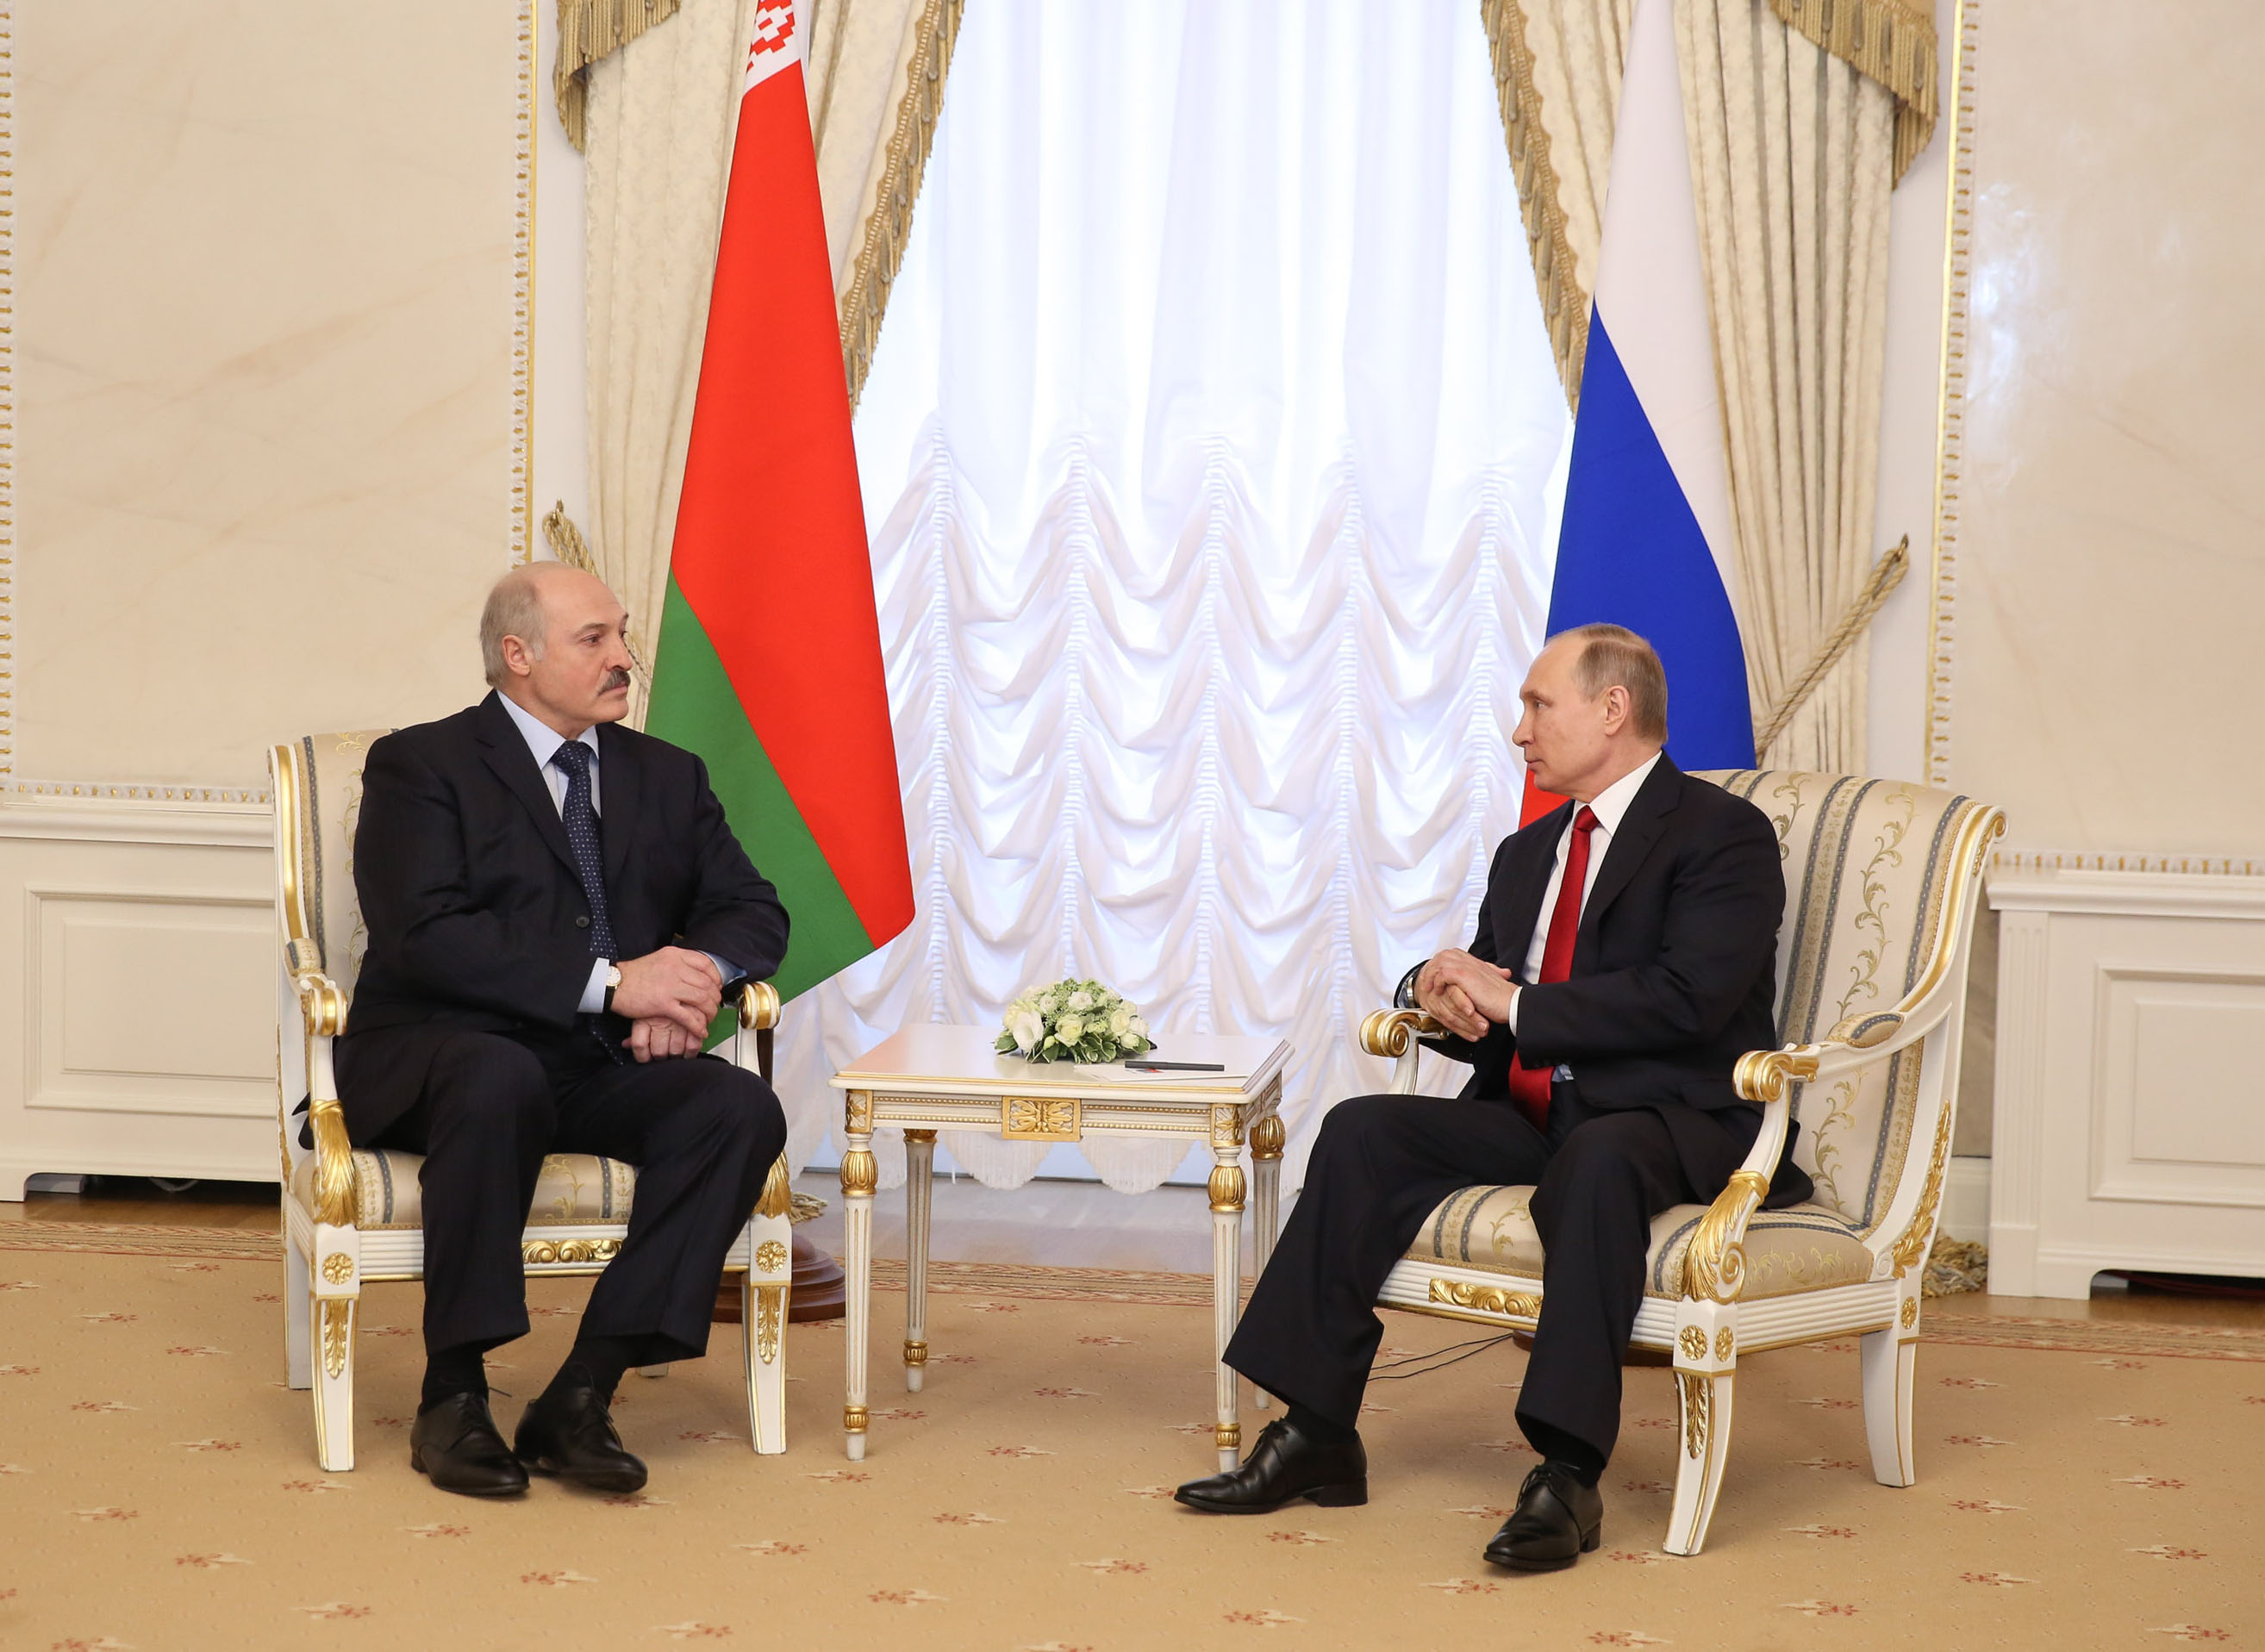 Александр Лукашенко - Владимиру Путину: Спокойно жить нам никто не даст - надо быть готовым ко всему